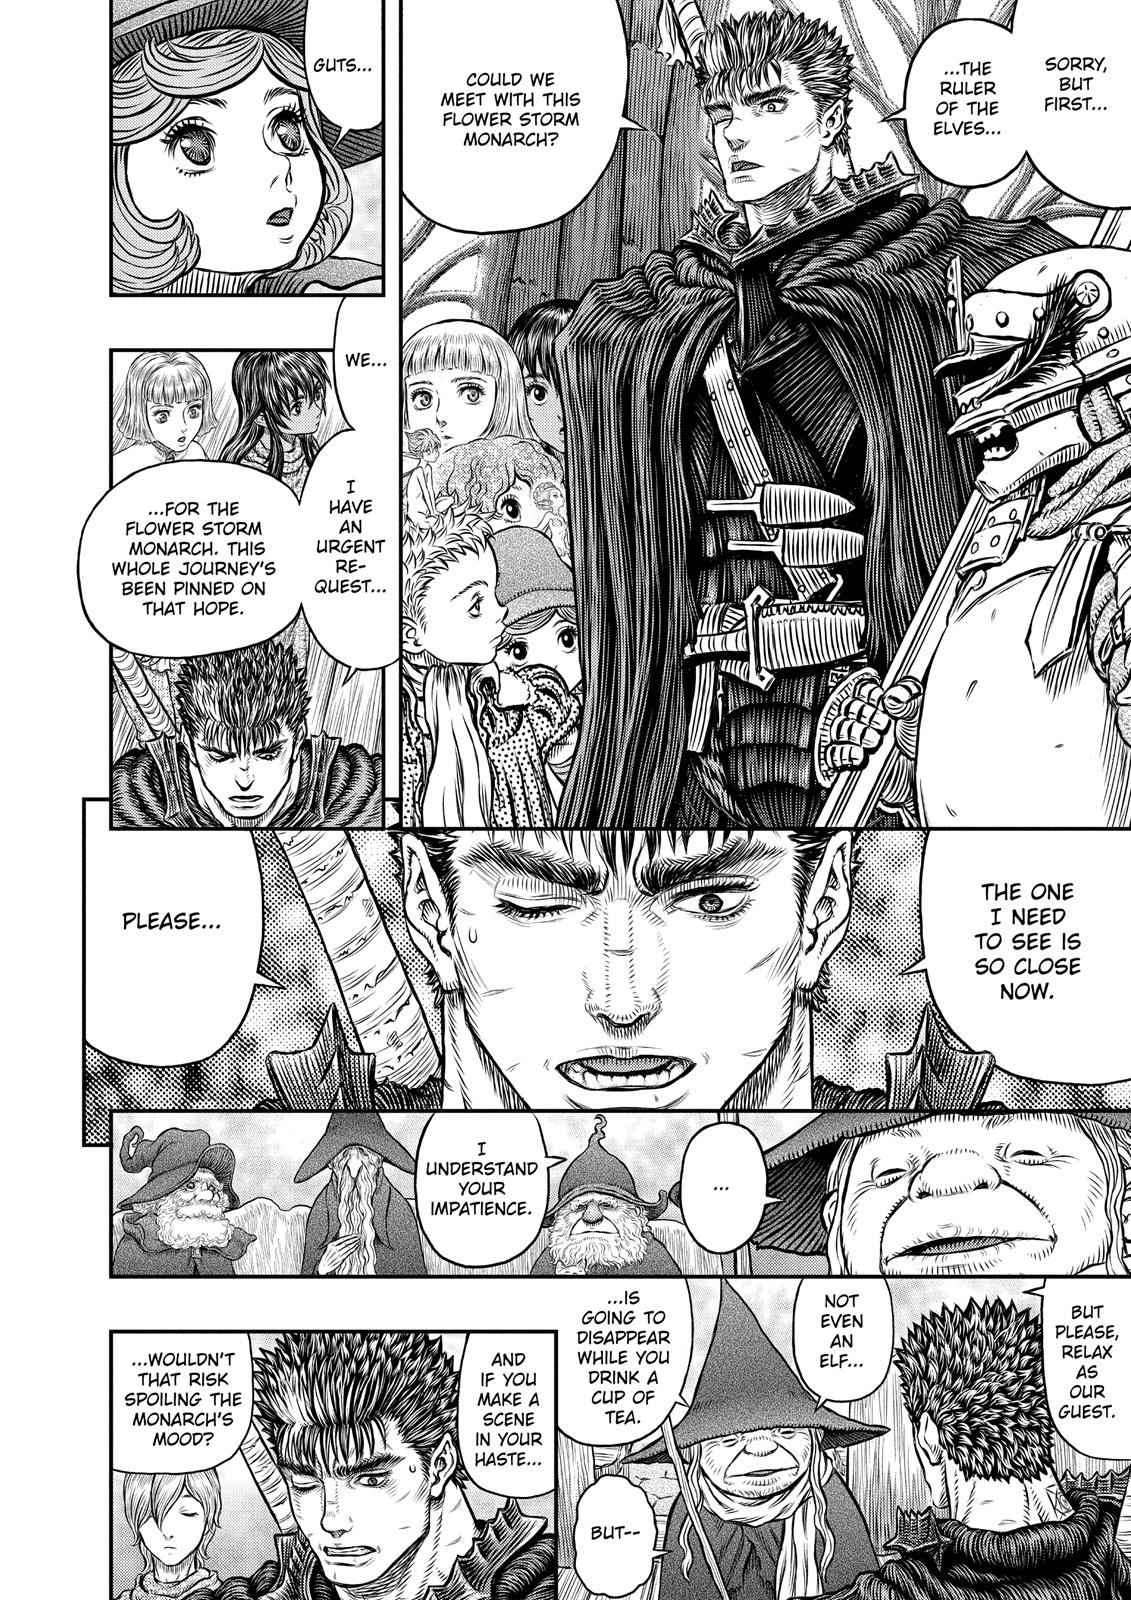 Berserk Manga Chapter 345 image 06